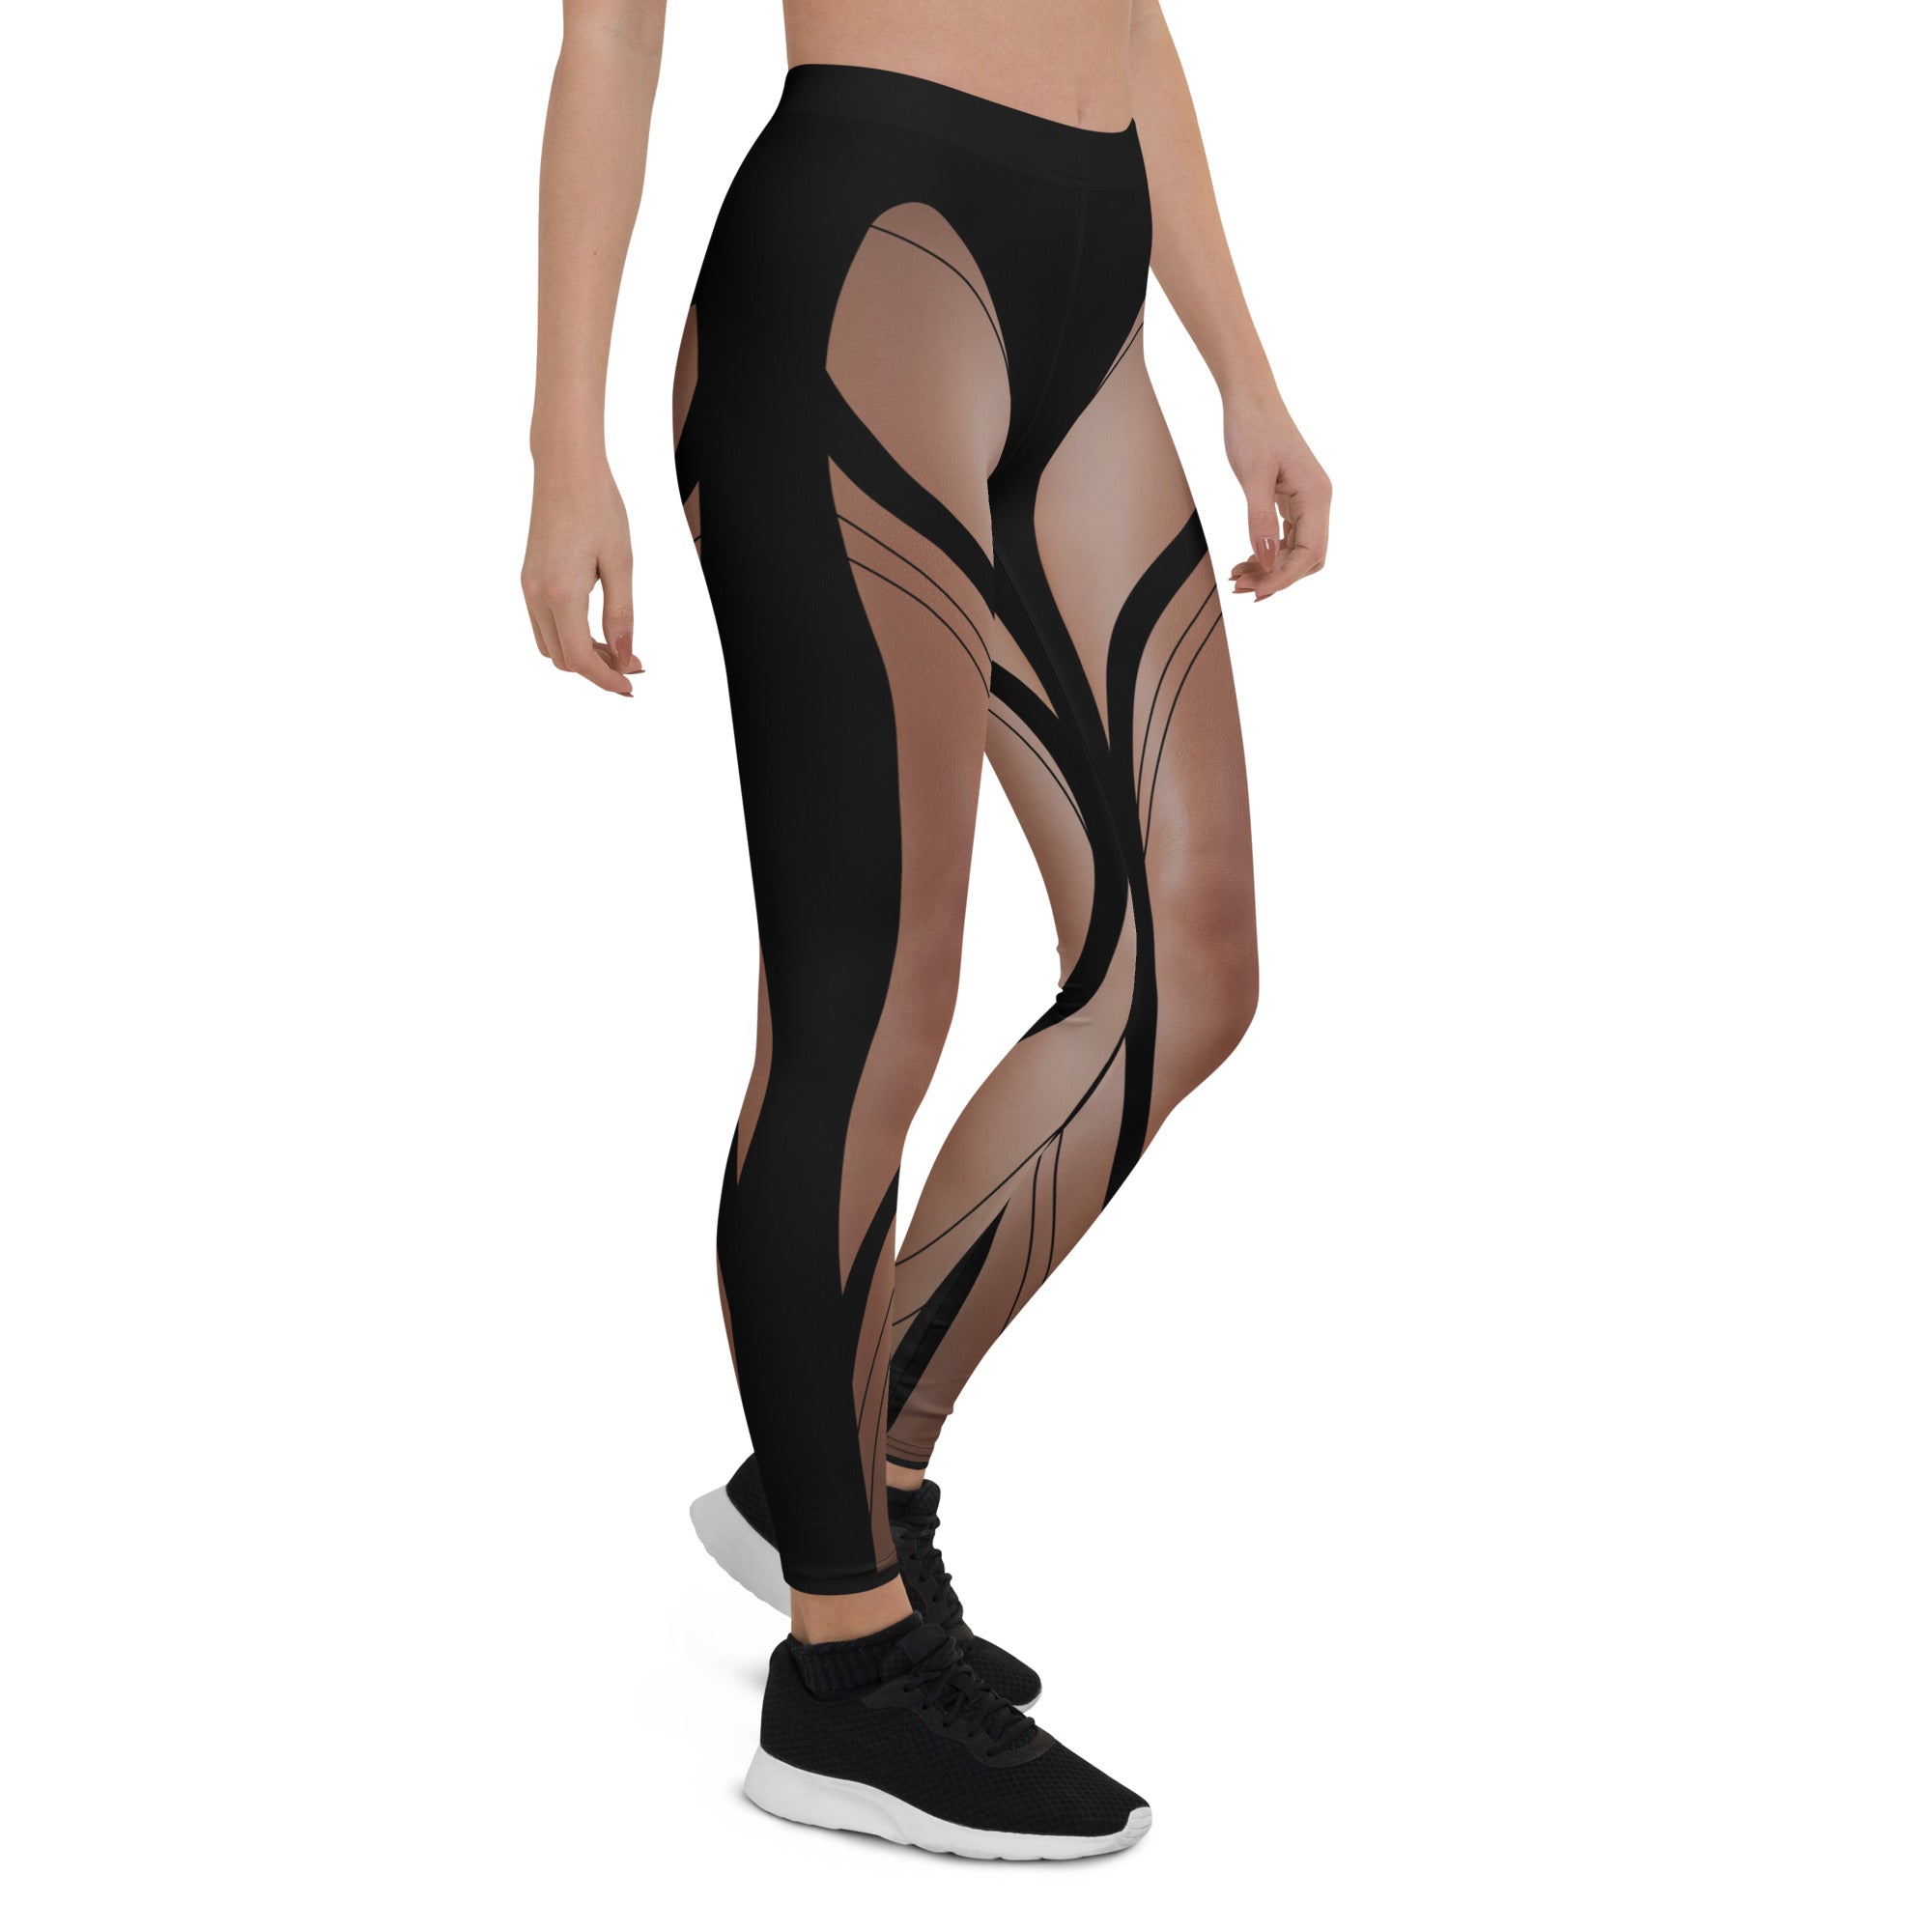 https://fiercepulse.com/cdn/shop/files/bold-naked-leg-print-leggings-fiercepulse-30007258546275.jpg?v=1692721710&width=2000